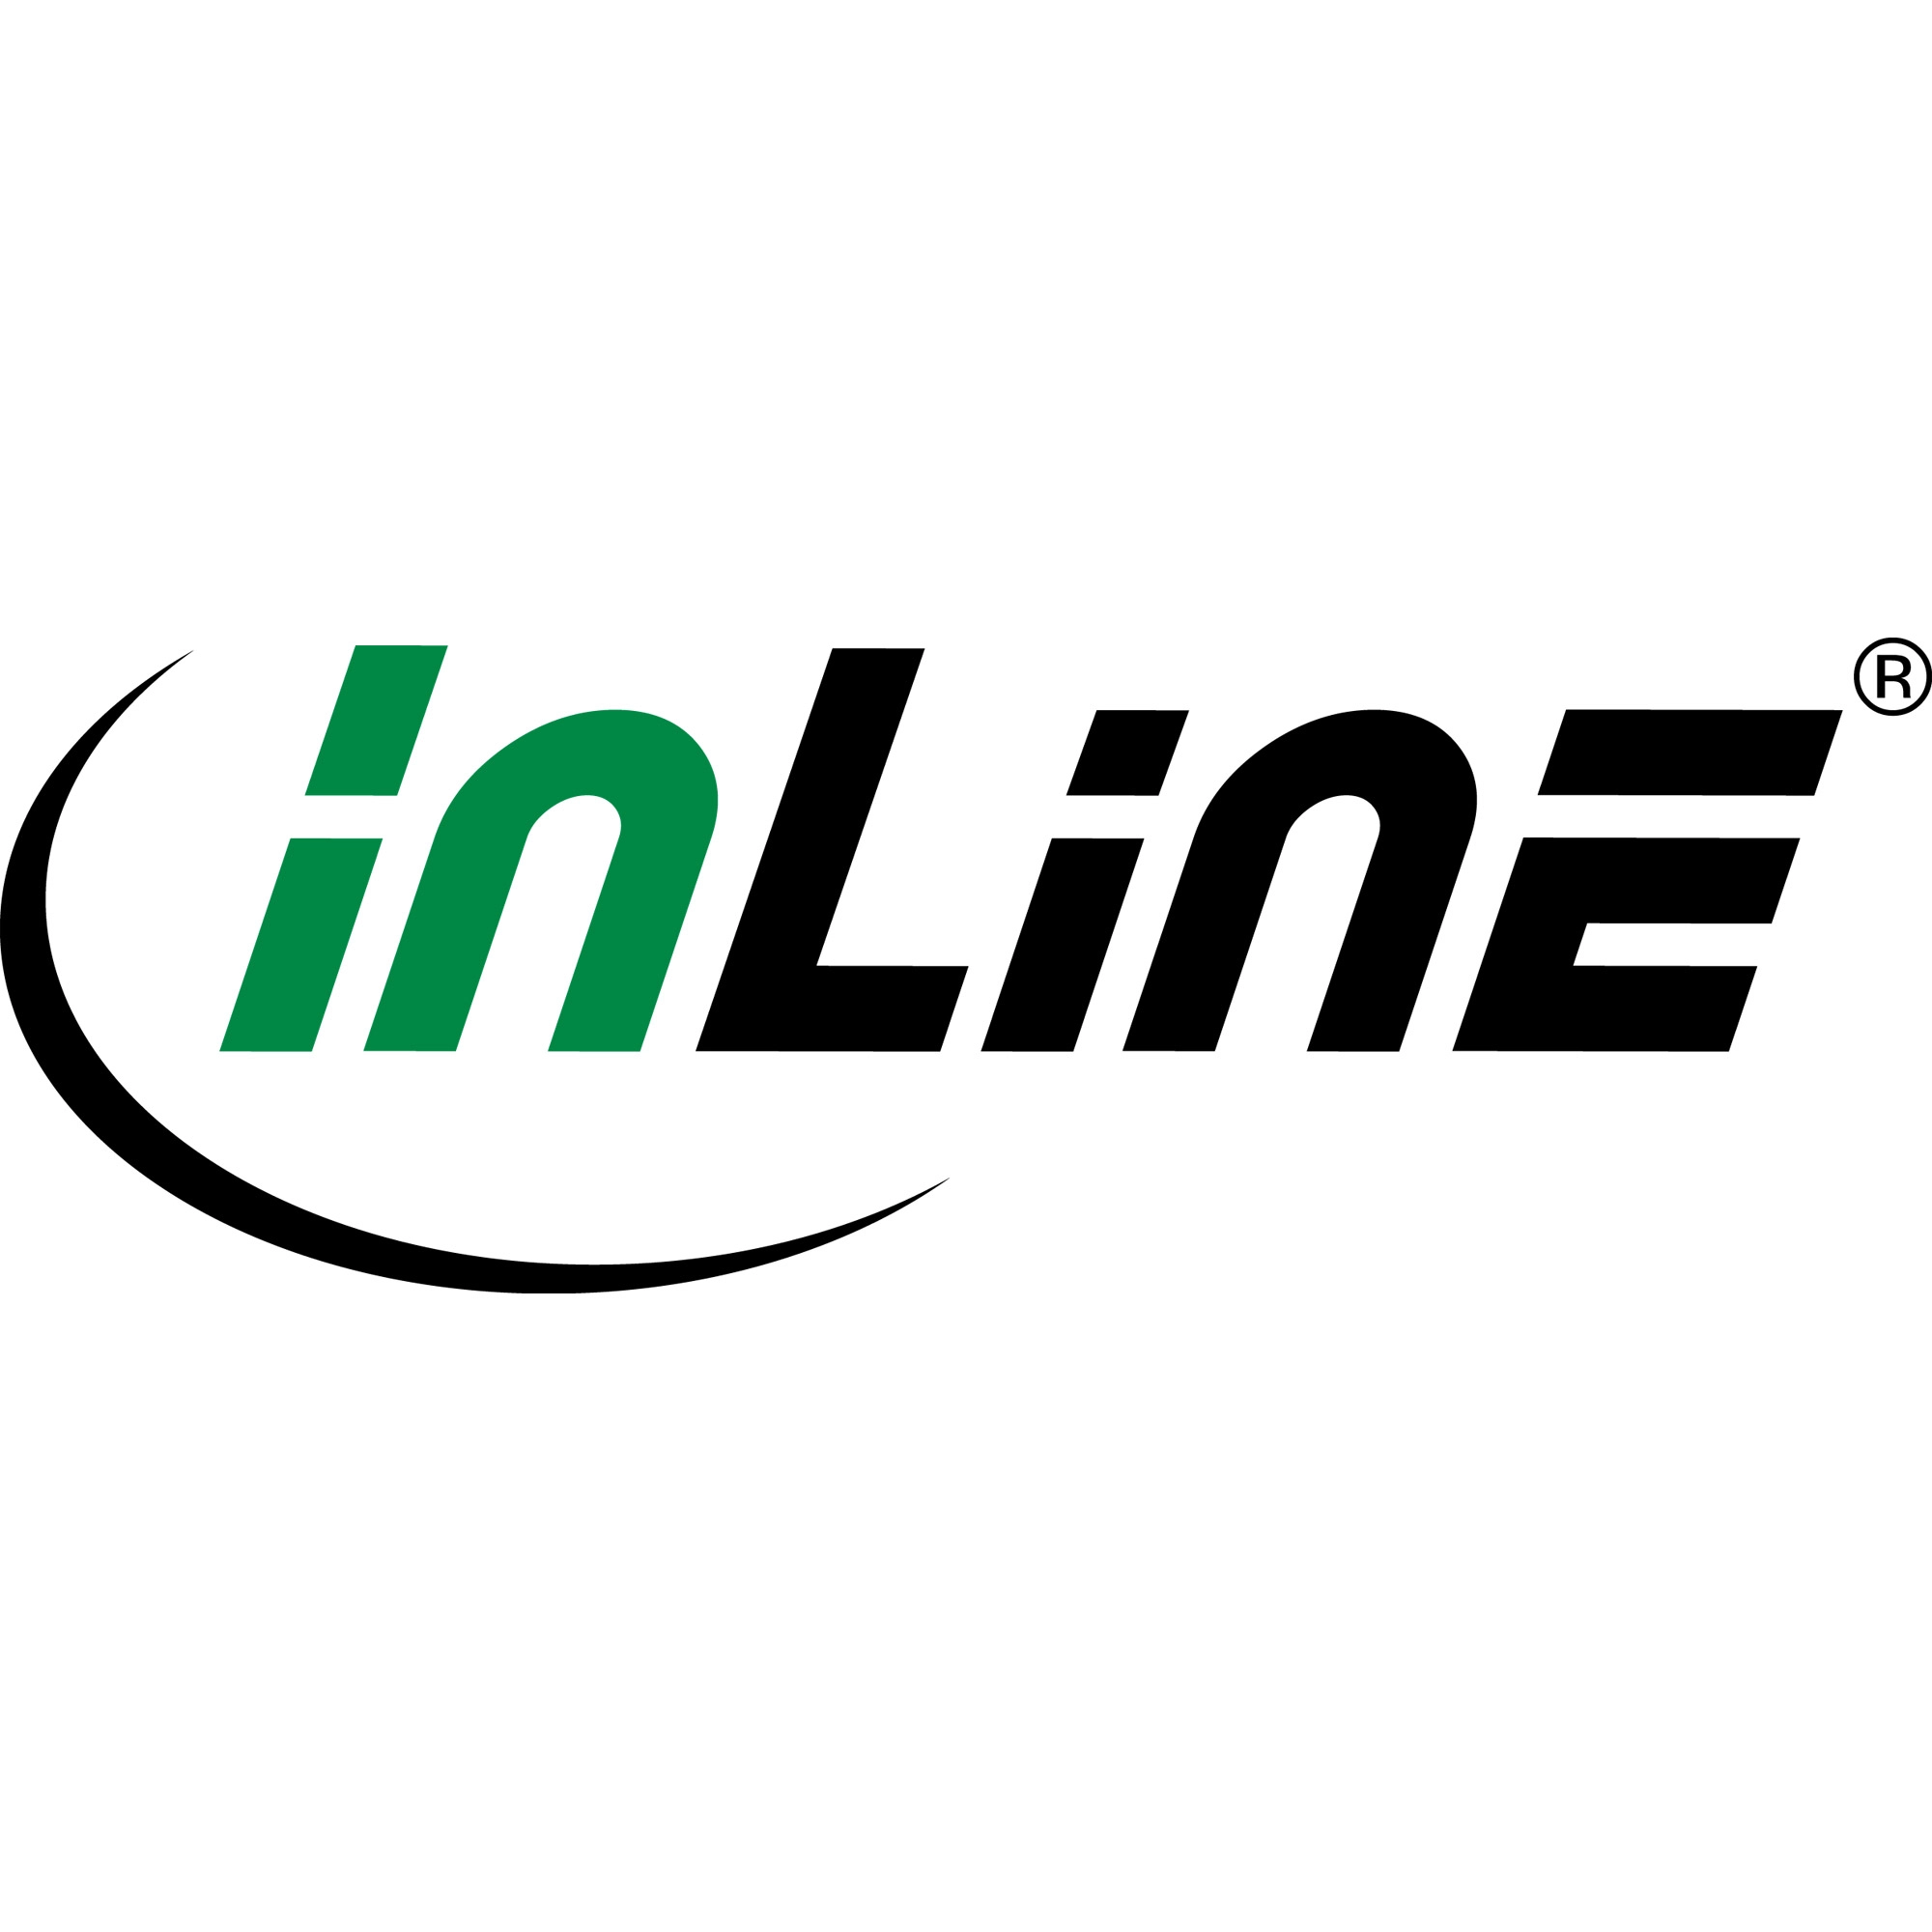 InLine USB 3.0 Kabel - A an A - schwarz - 1,5m